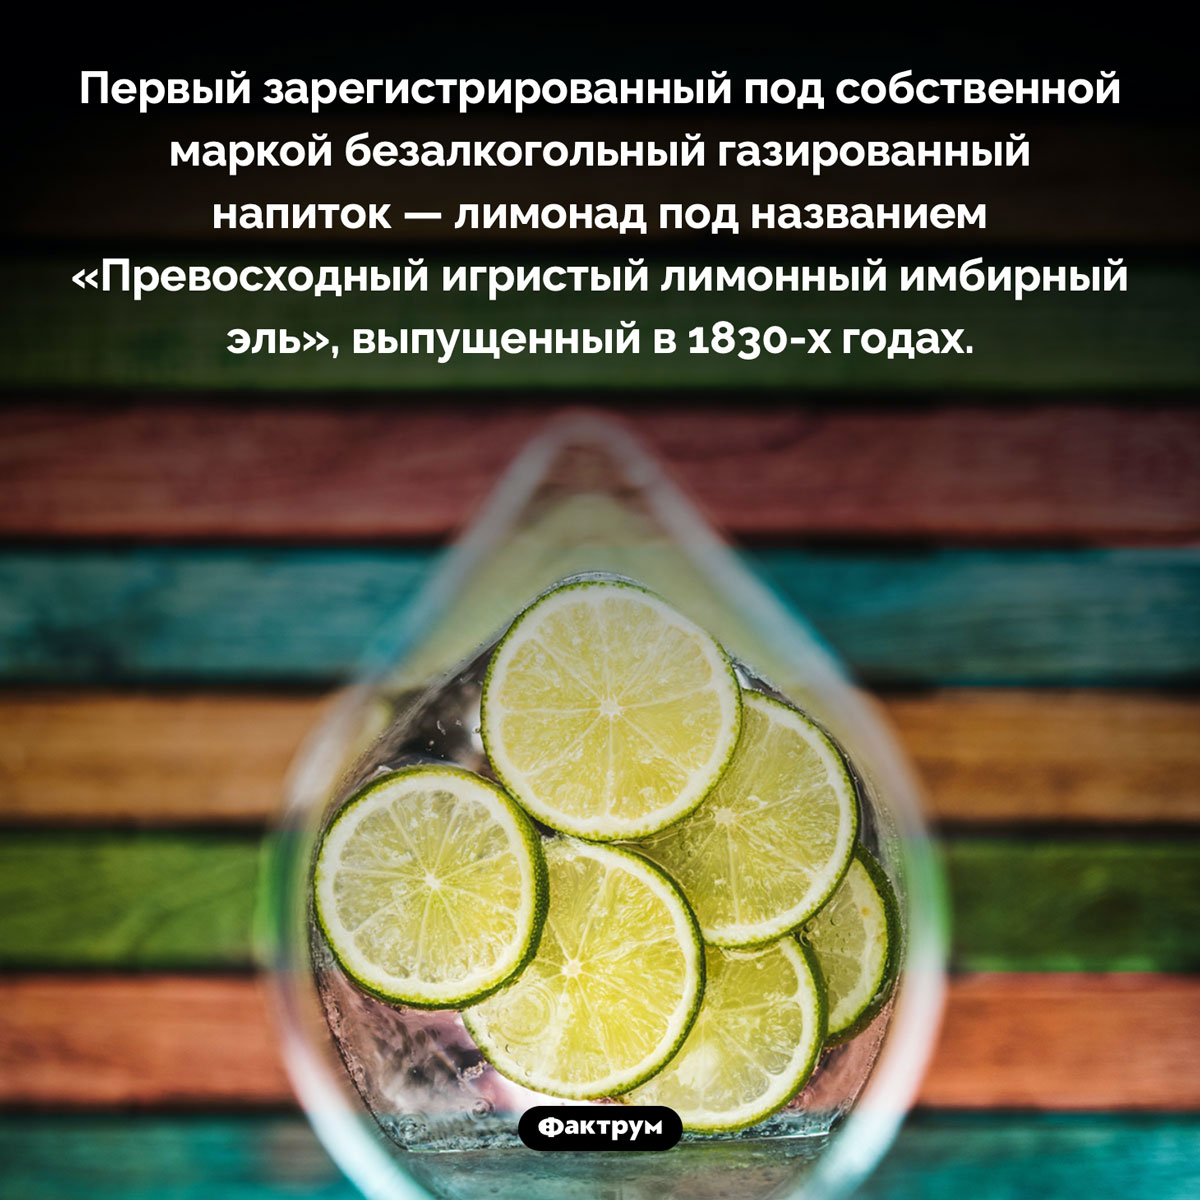 Первый лимонад в истории. Первый зарегистрированный под собственной маркой безалкогольный газированный напиток — лимонад под названием «Превосходный игристый лимонный имбирный эль», выпущенный в 1830-х годах.